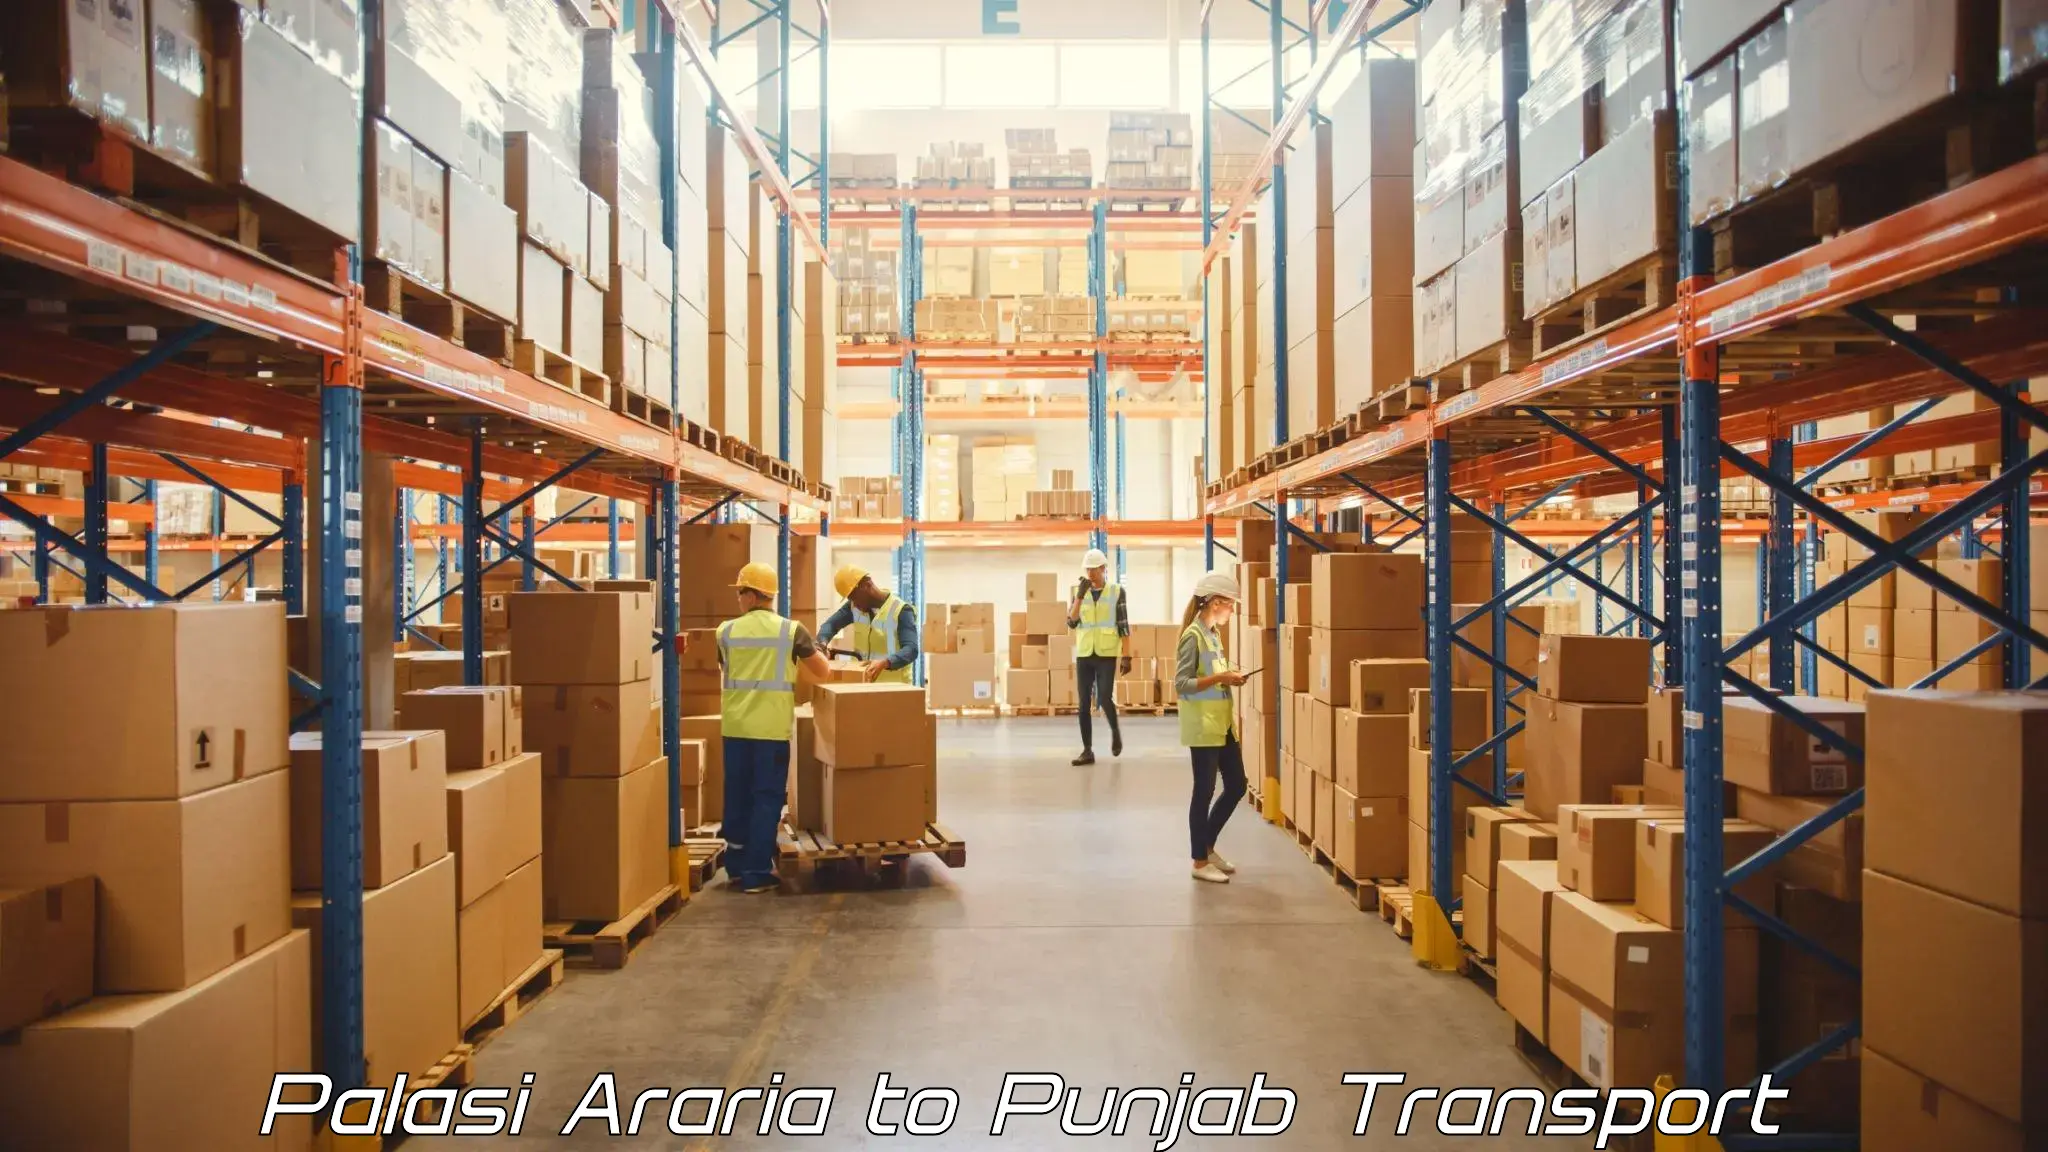 Furniture transport service in Palasi Araria to Zirakpur